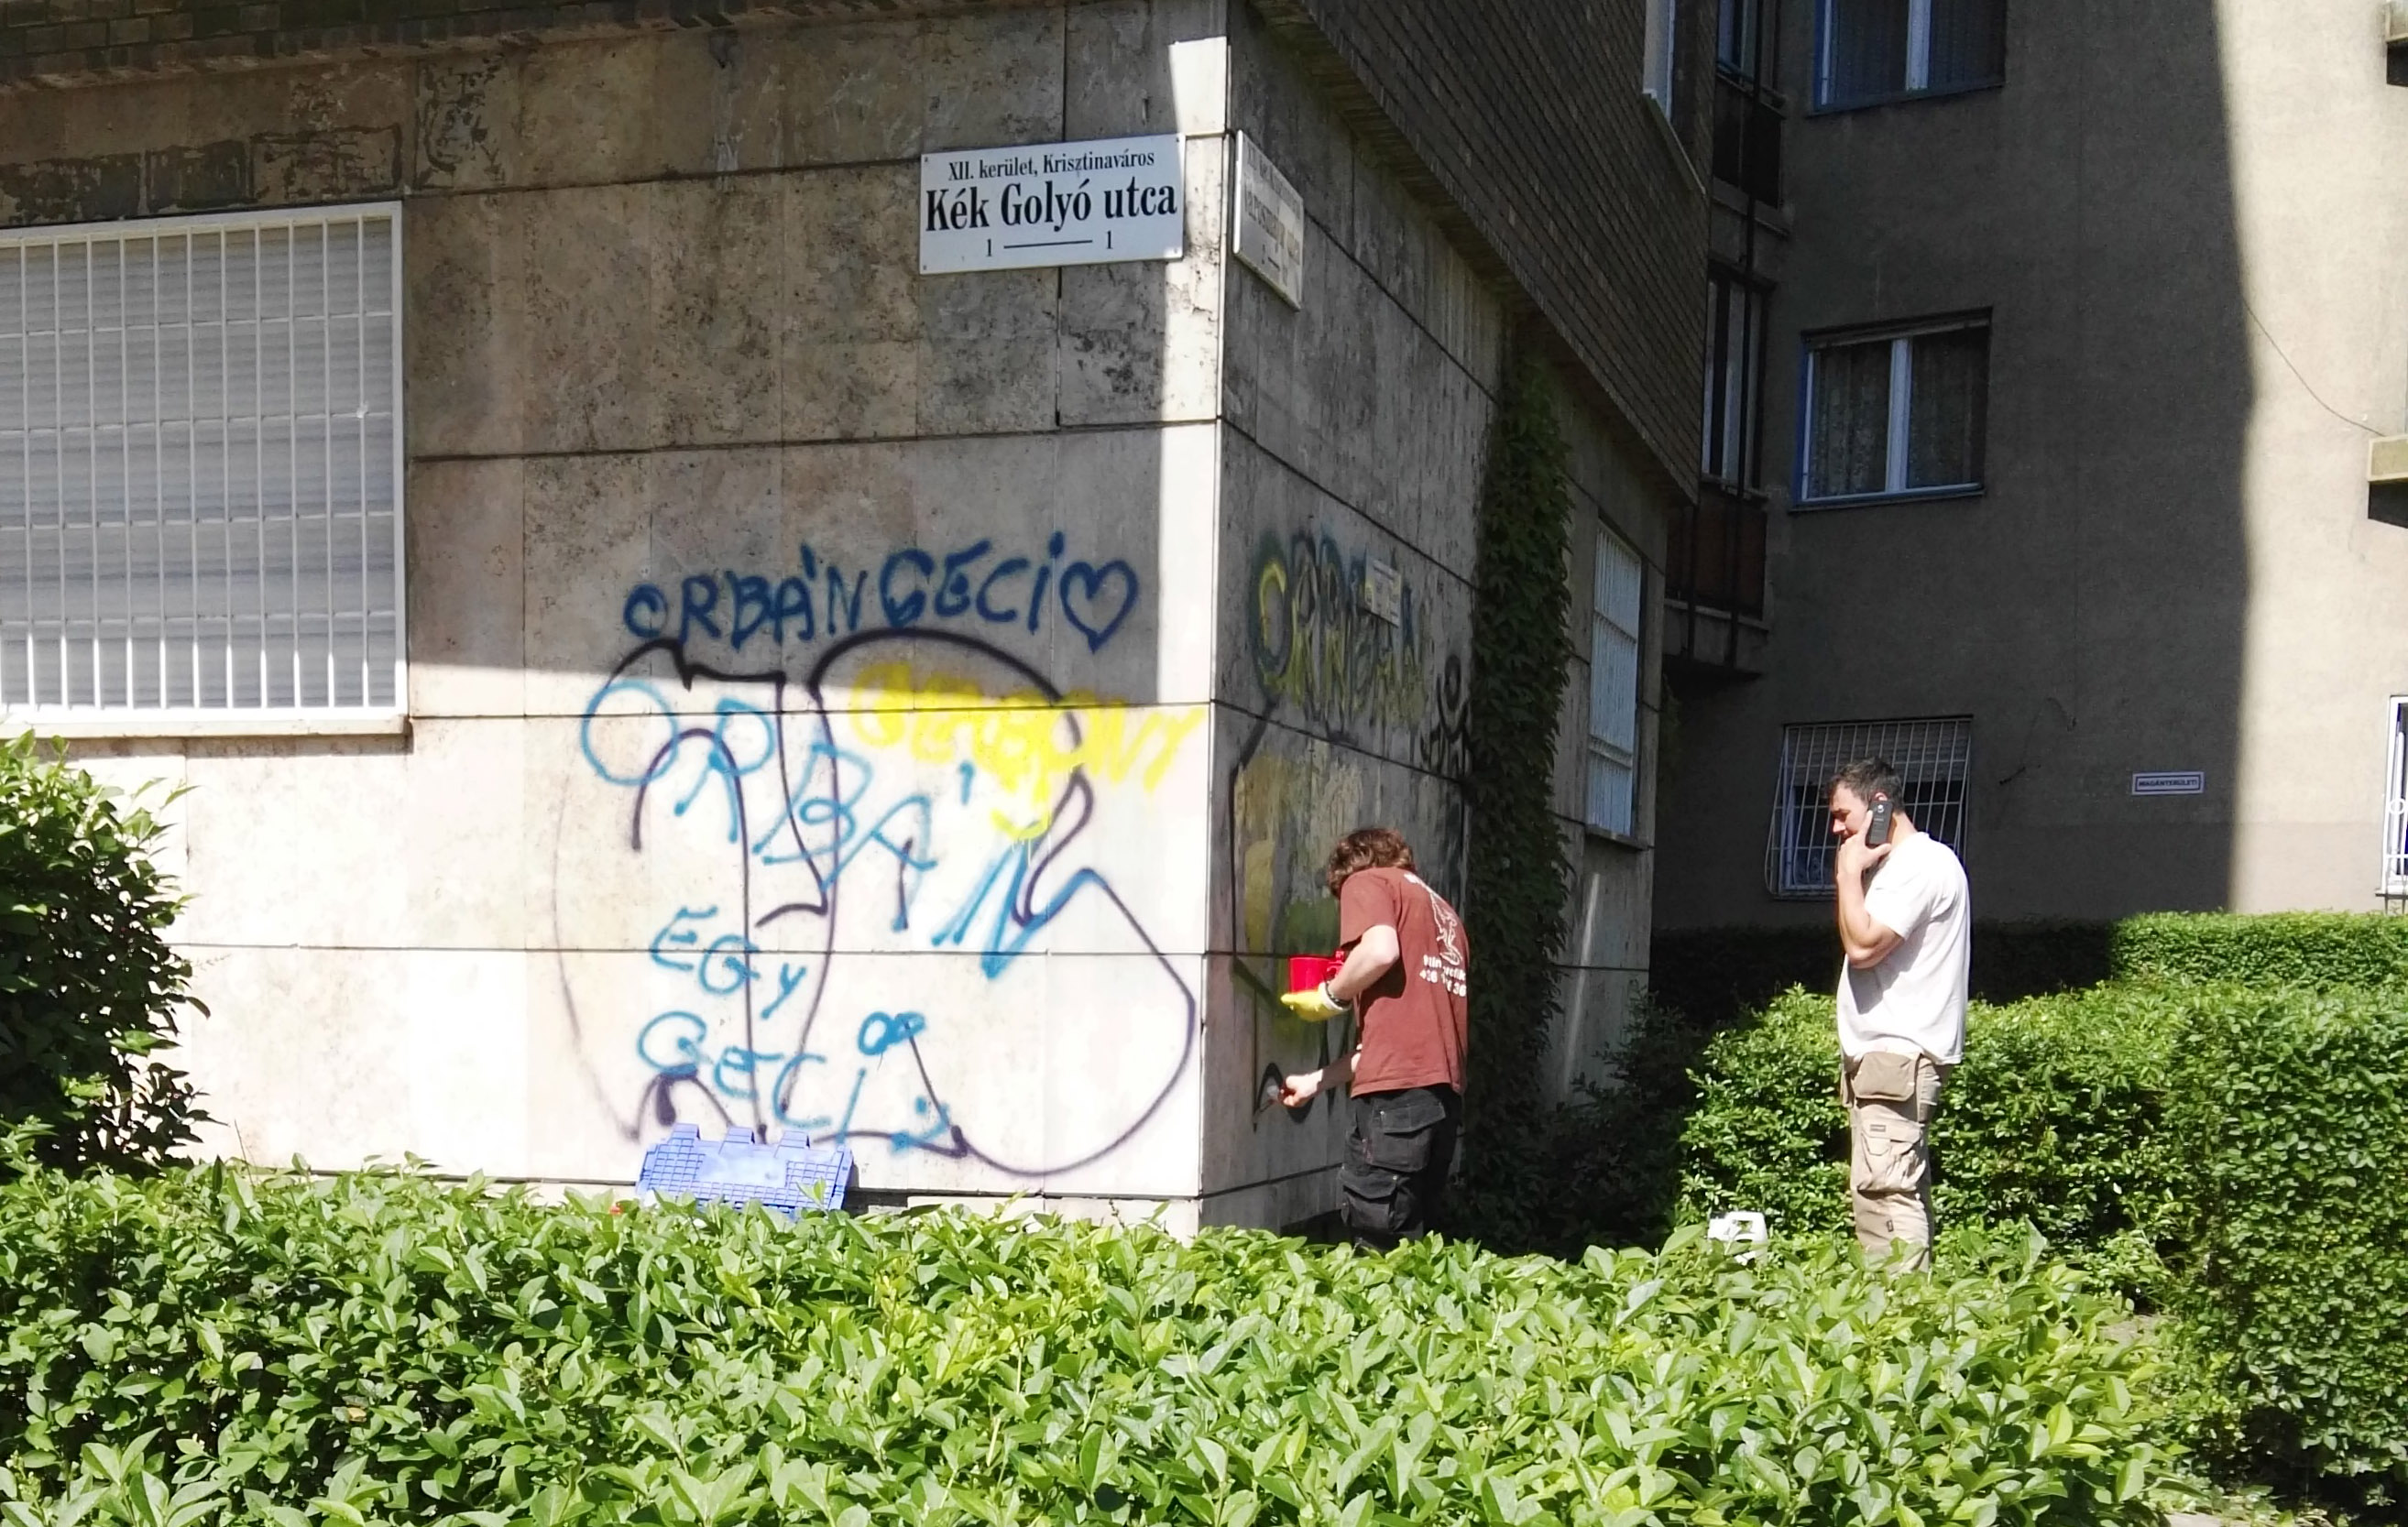 Újabb gyorsreakciós hadtest állt csatasorba a Városmajor és a Kékgolyó utca sarkán dúló graffitiháborúban